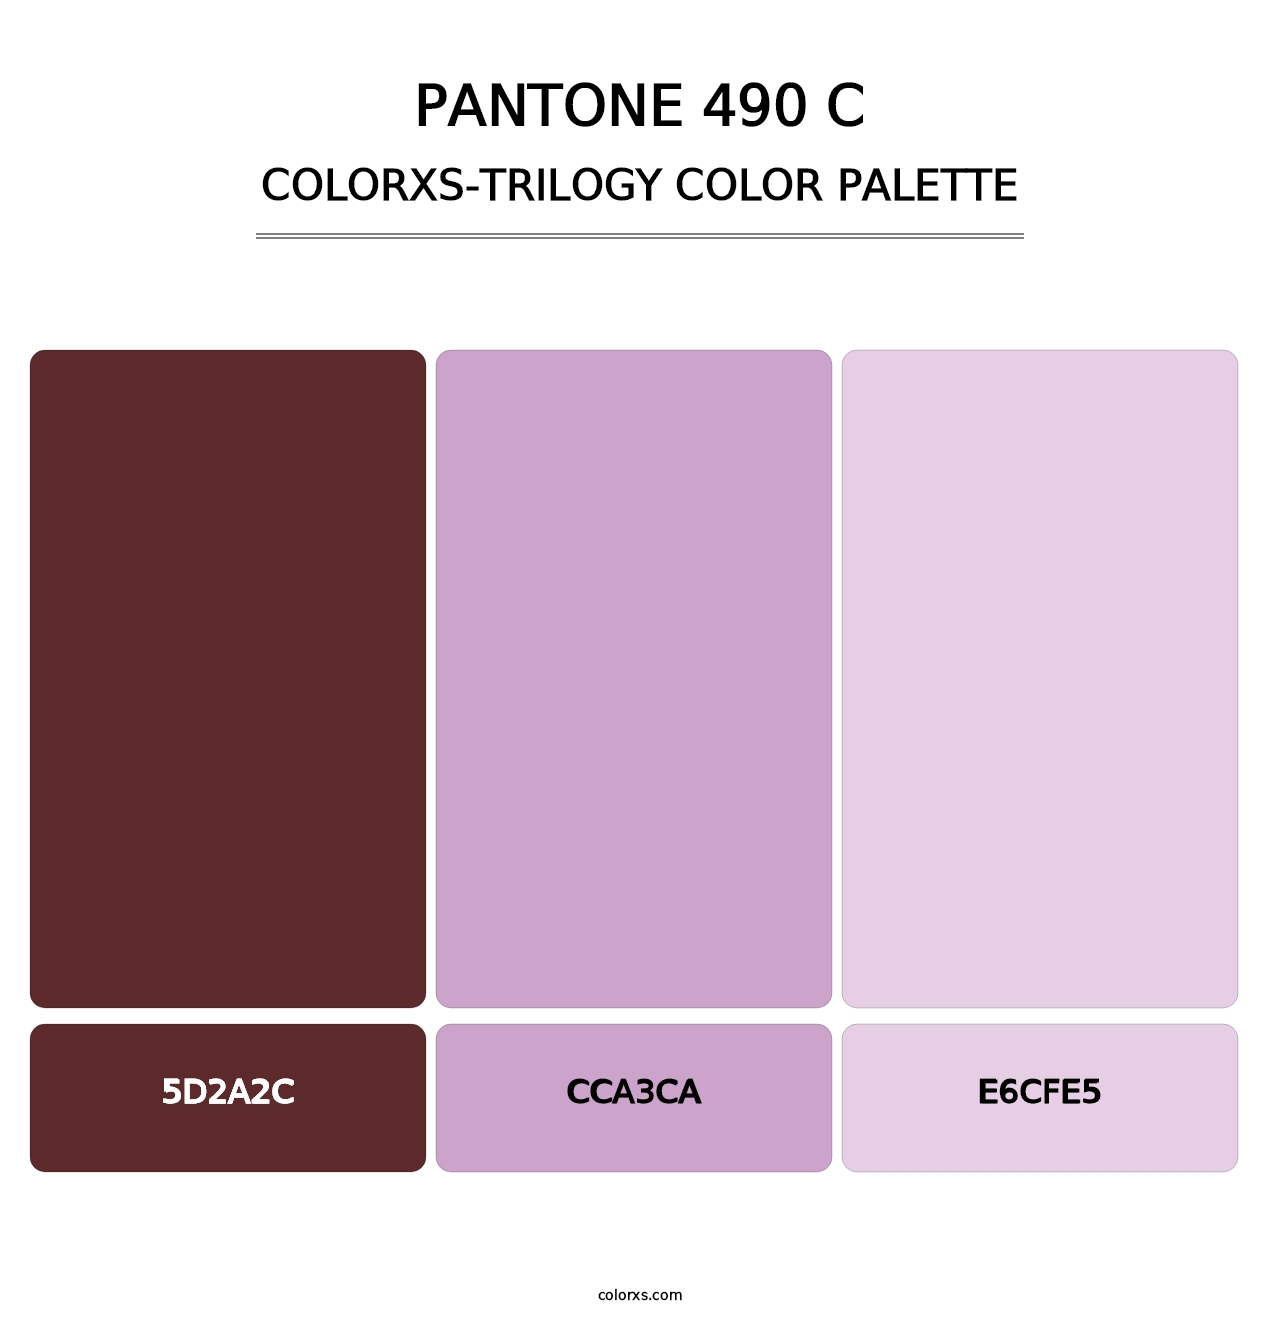 PANTONE 490 C - Colorxs Trilogy Palette